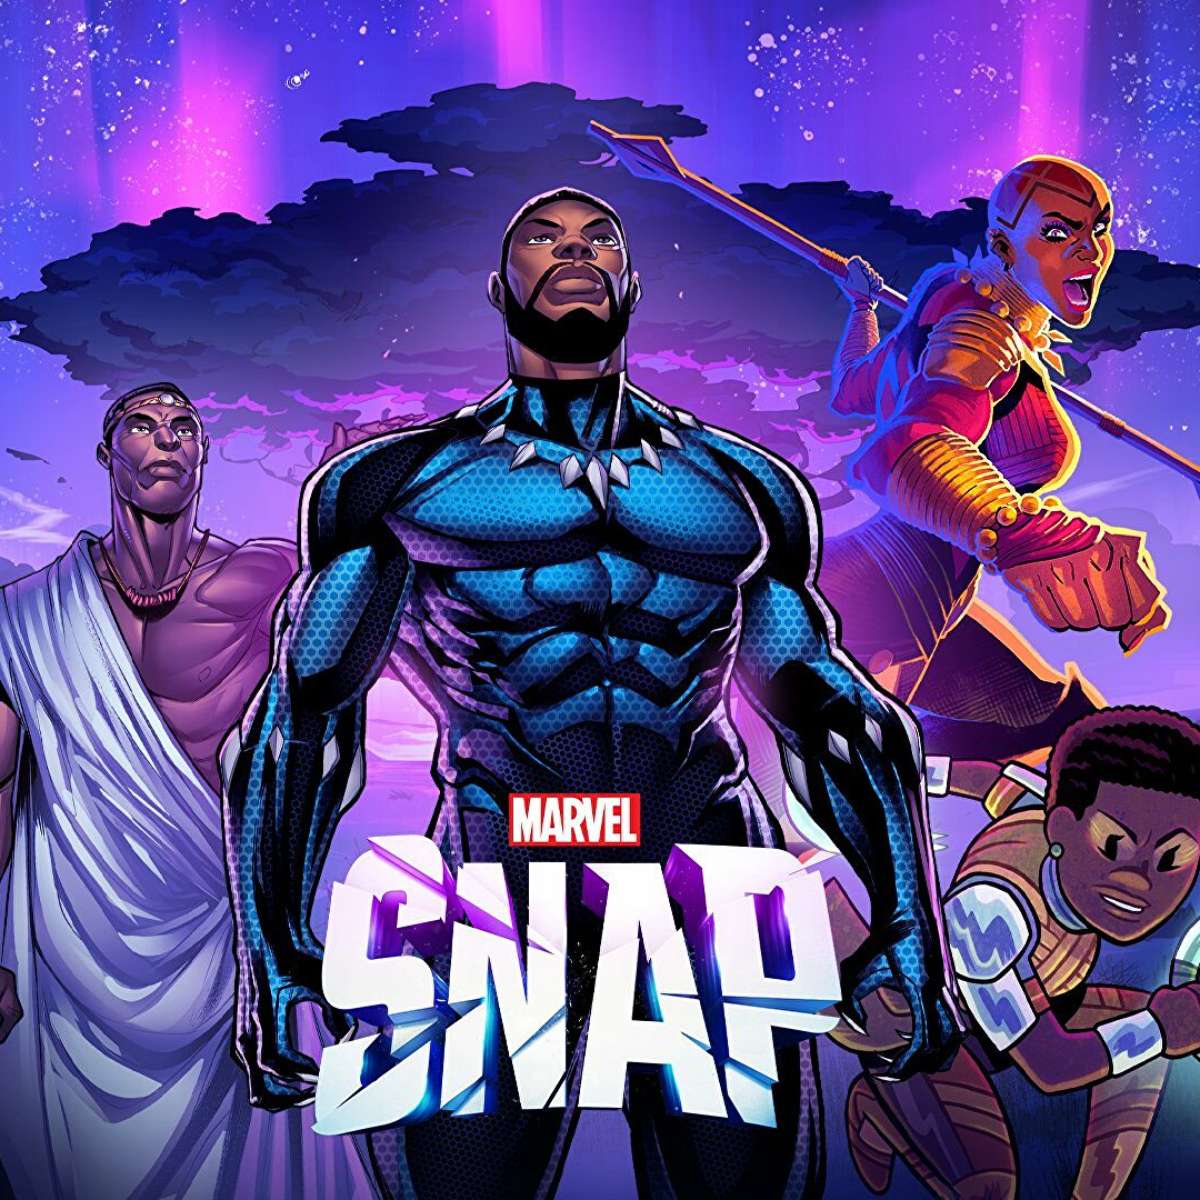 Pantera Negra, Capitã Marvel e Treinador são as novas skins de